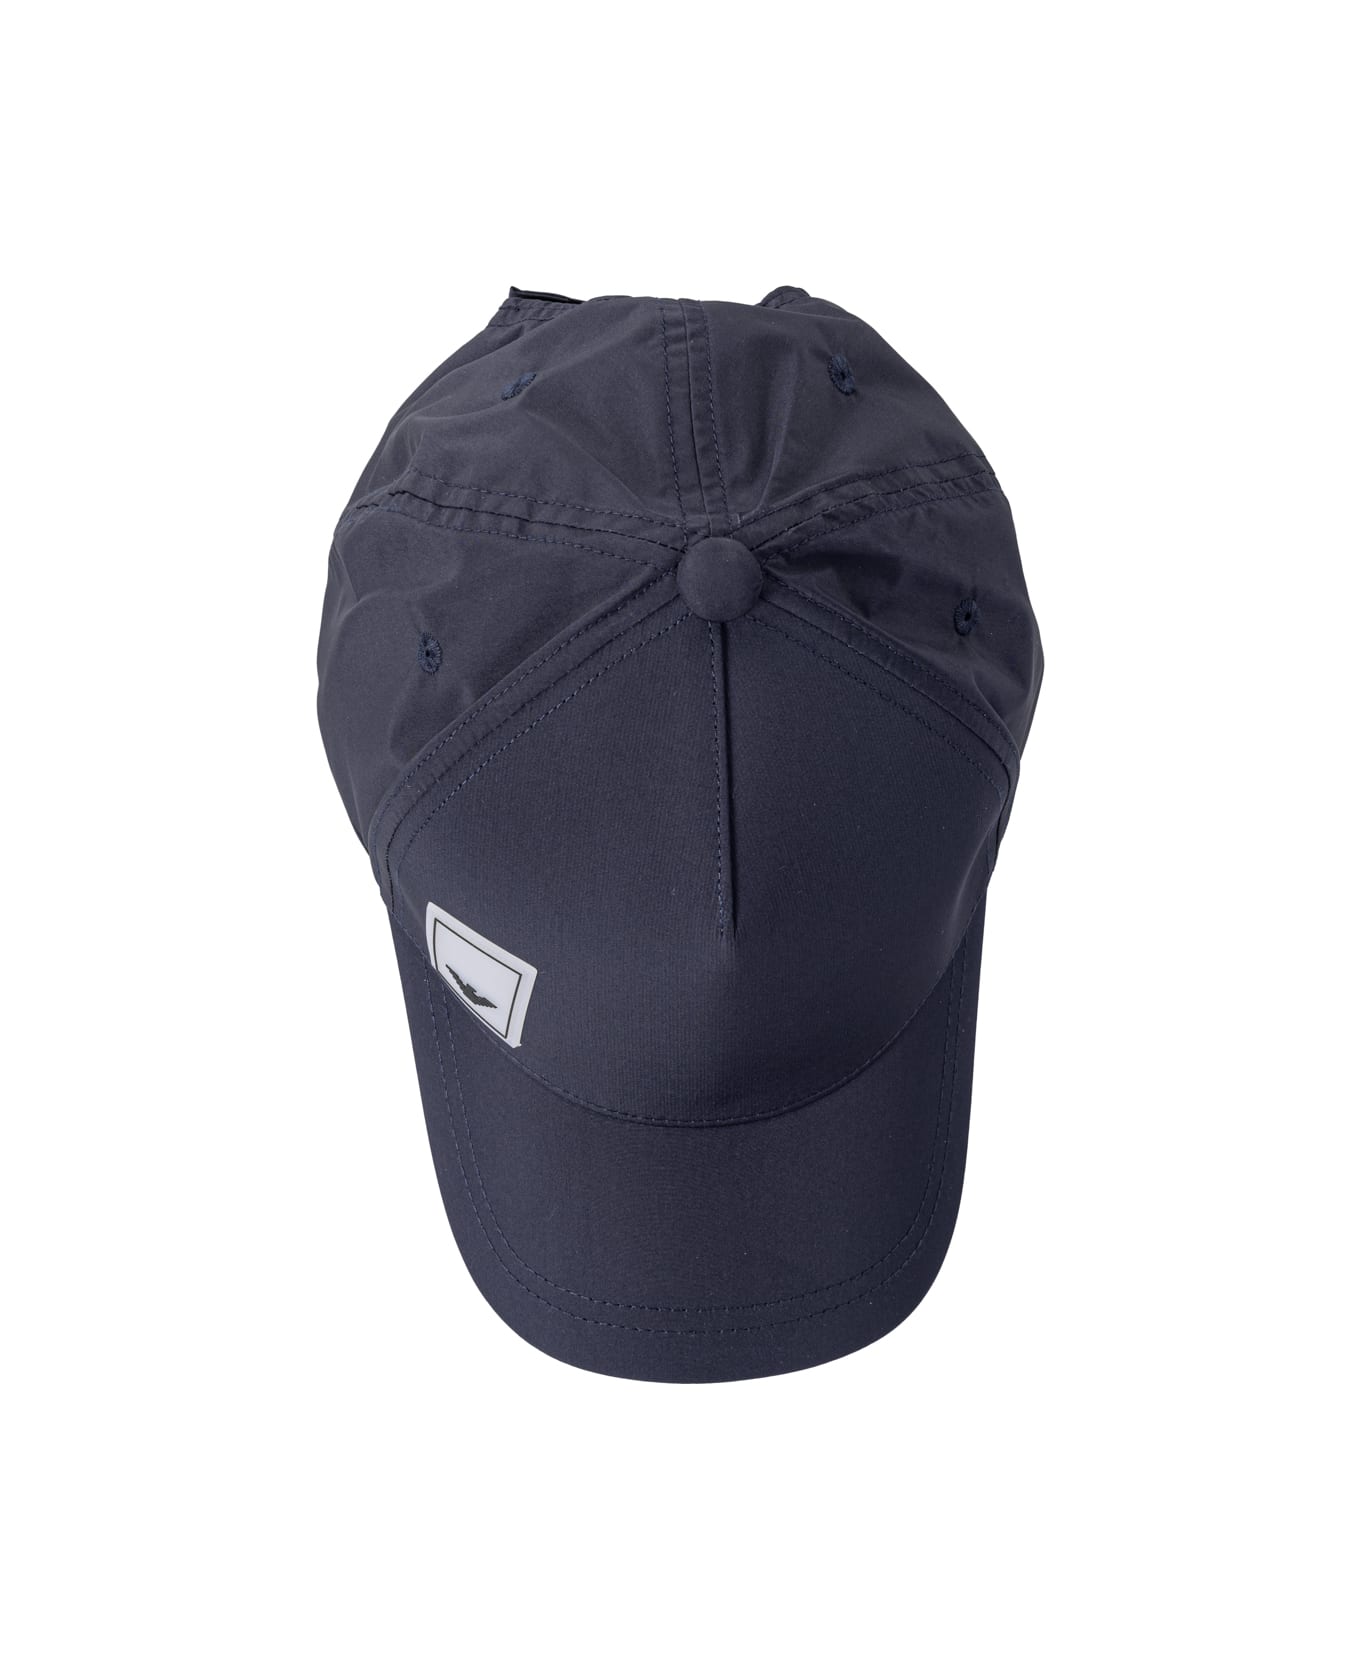 Emporio Armani Hats Blue - Blu 帽子